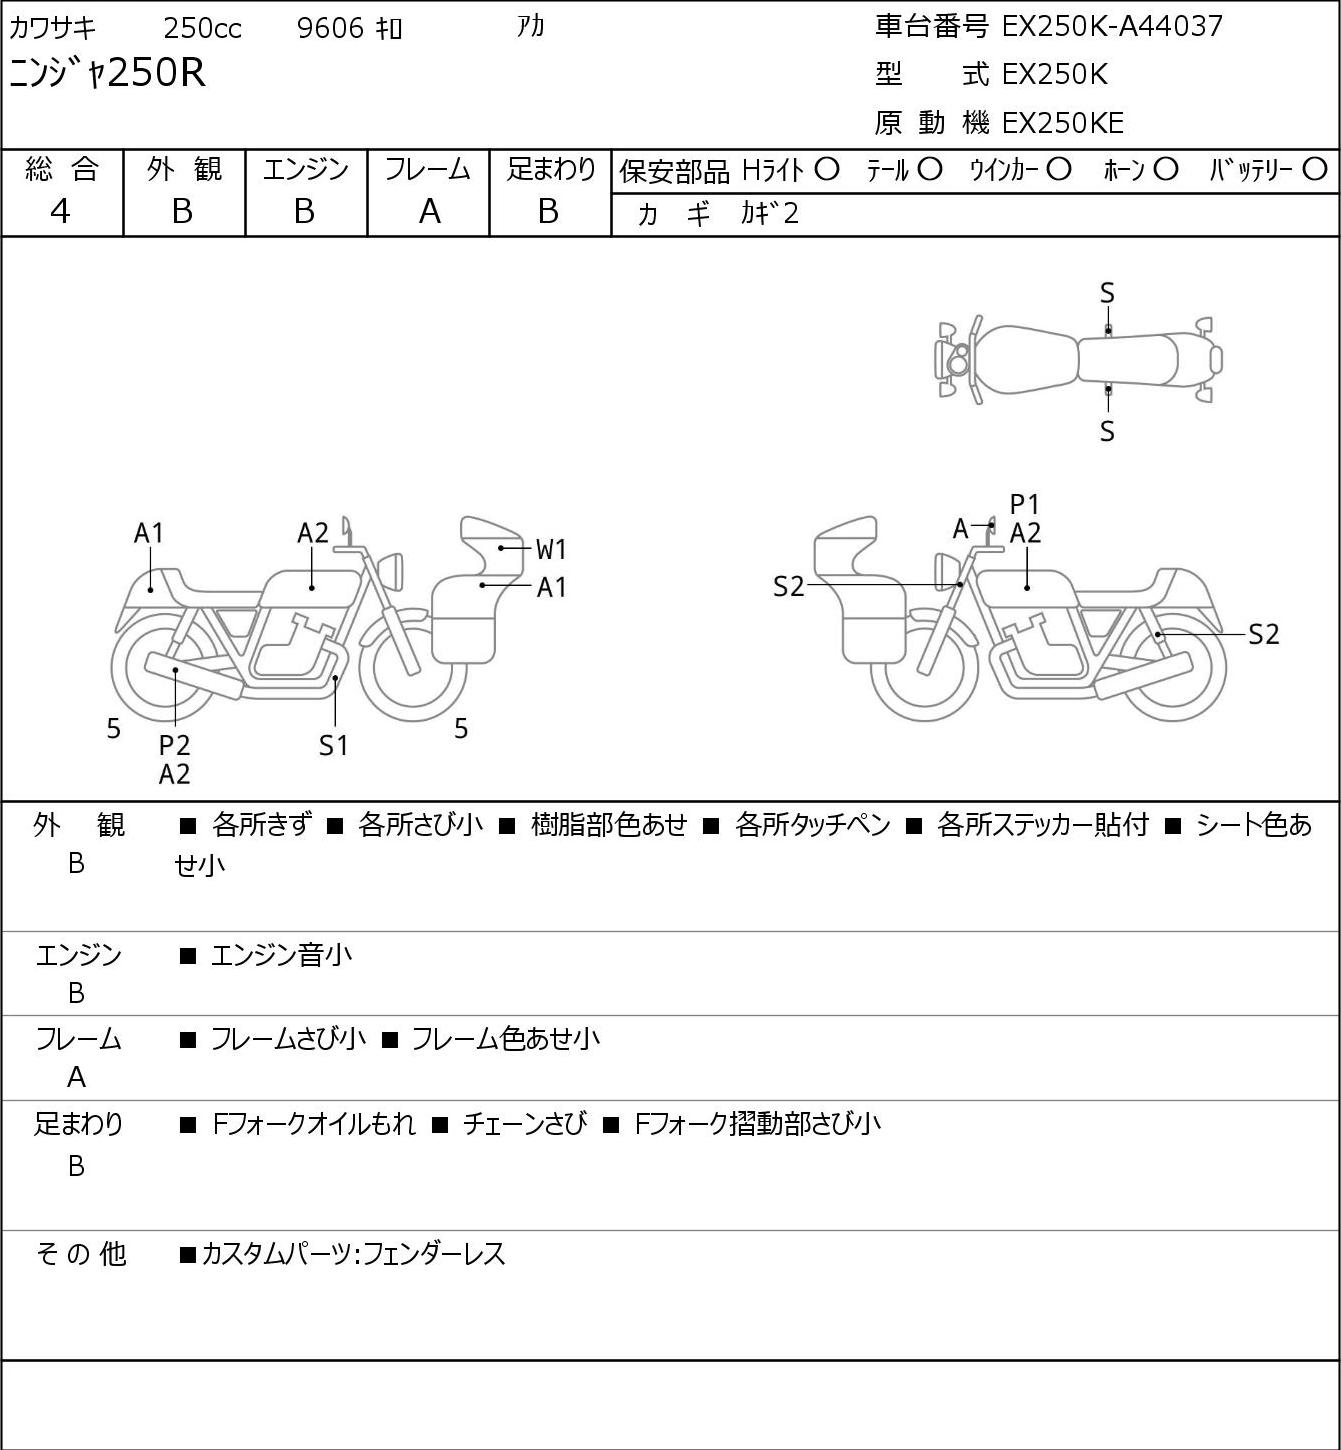 Kawasaki NINJA 250 R EX250K г. 9606